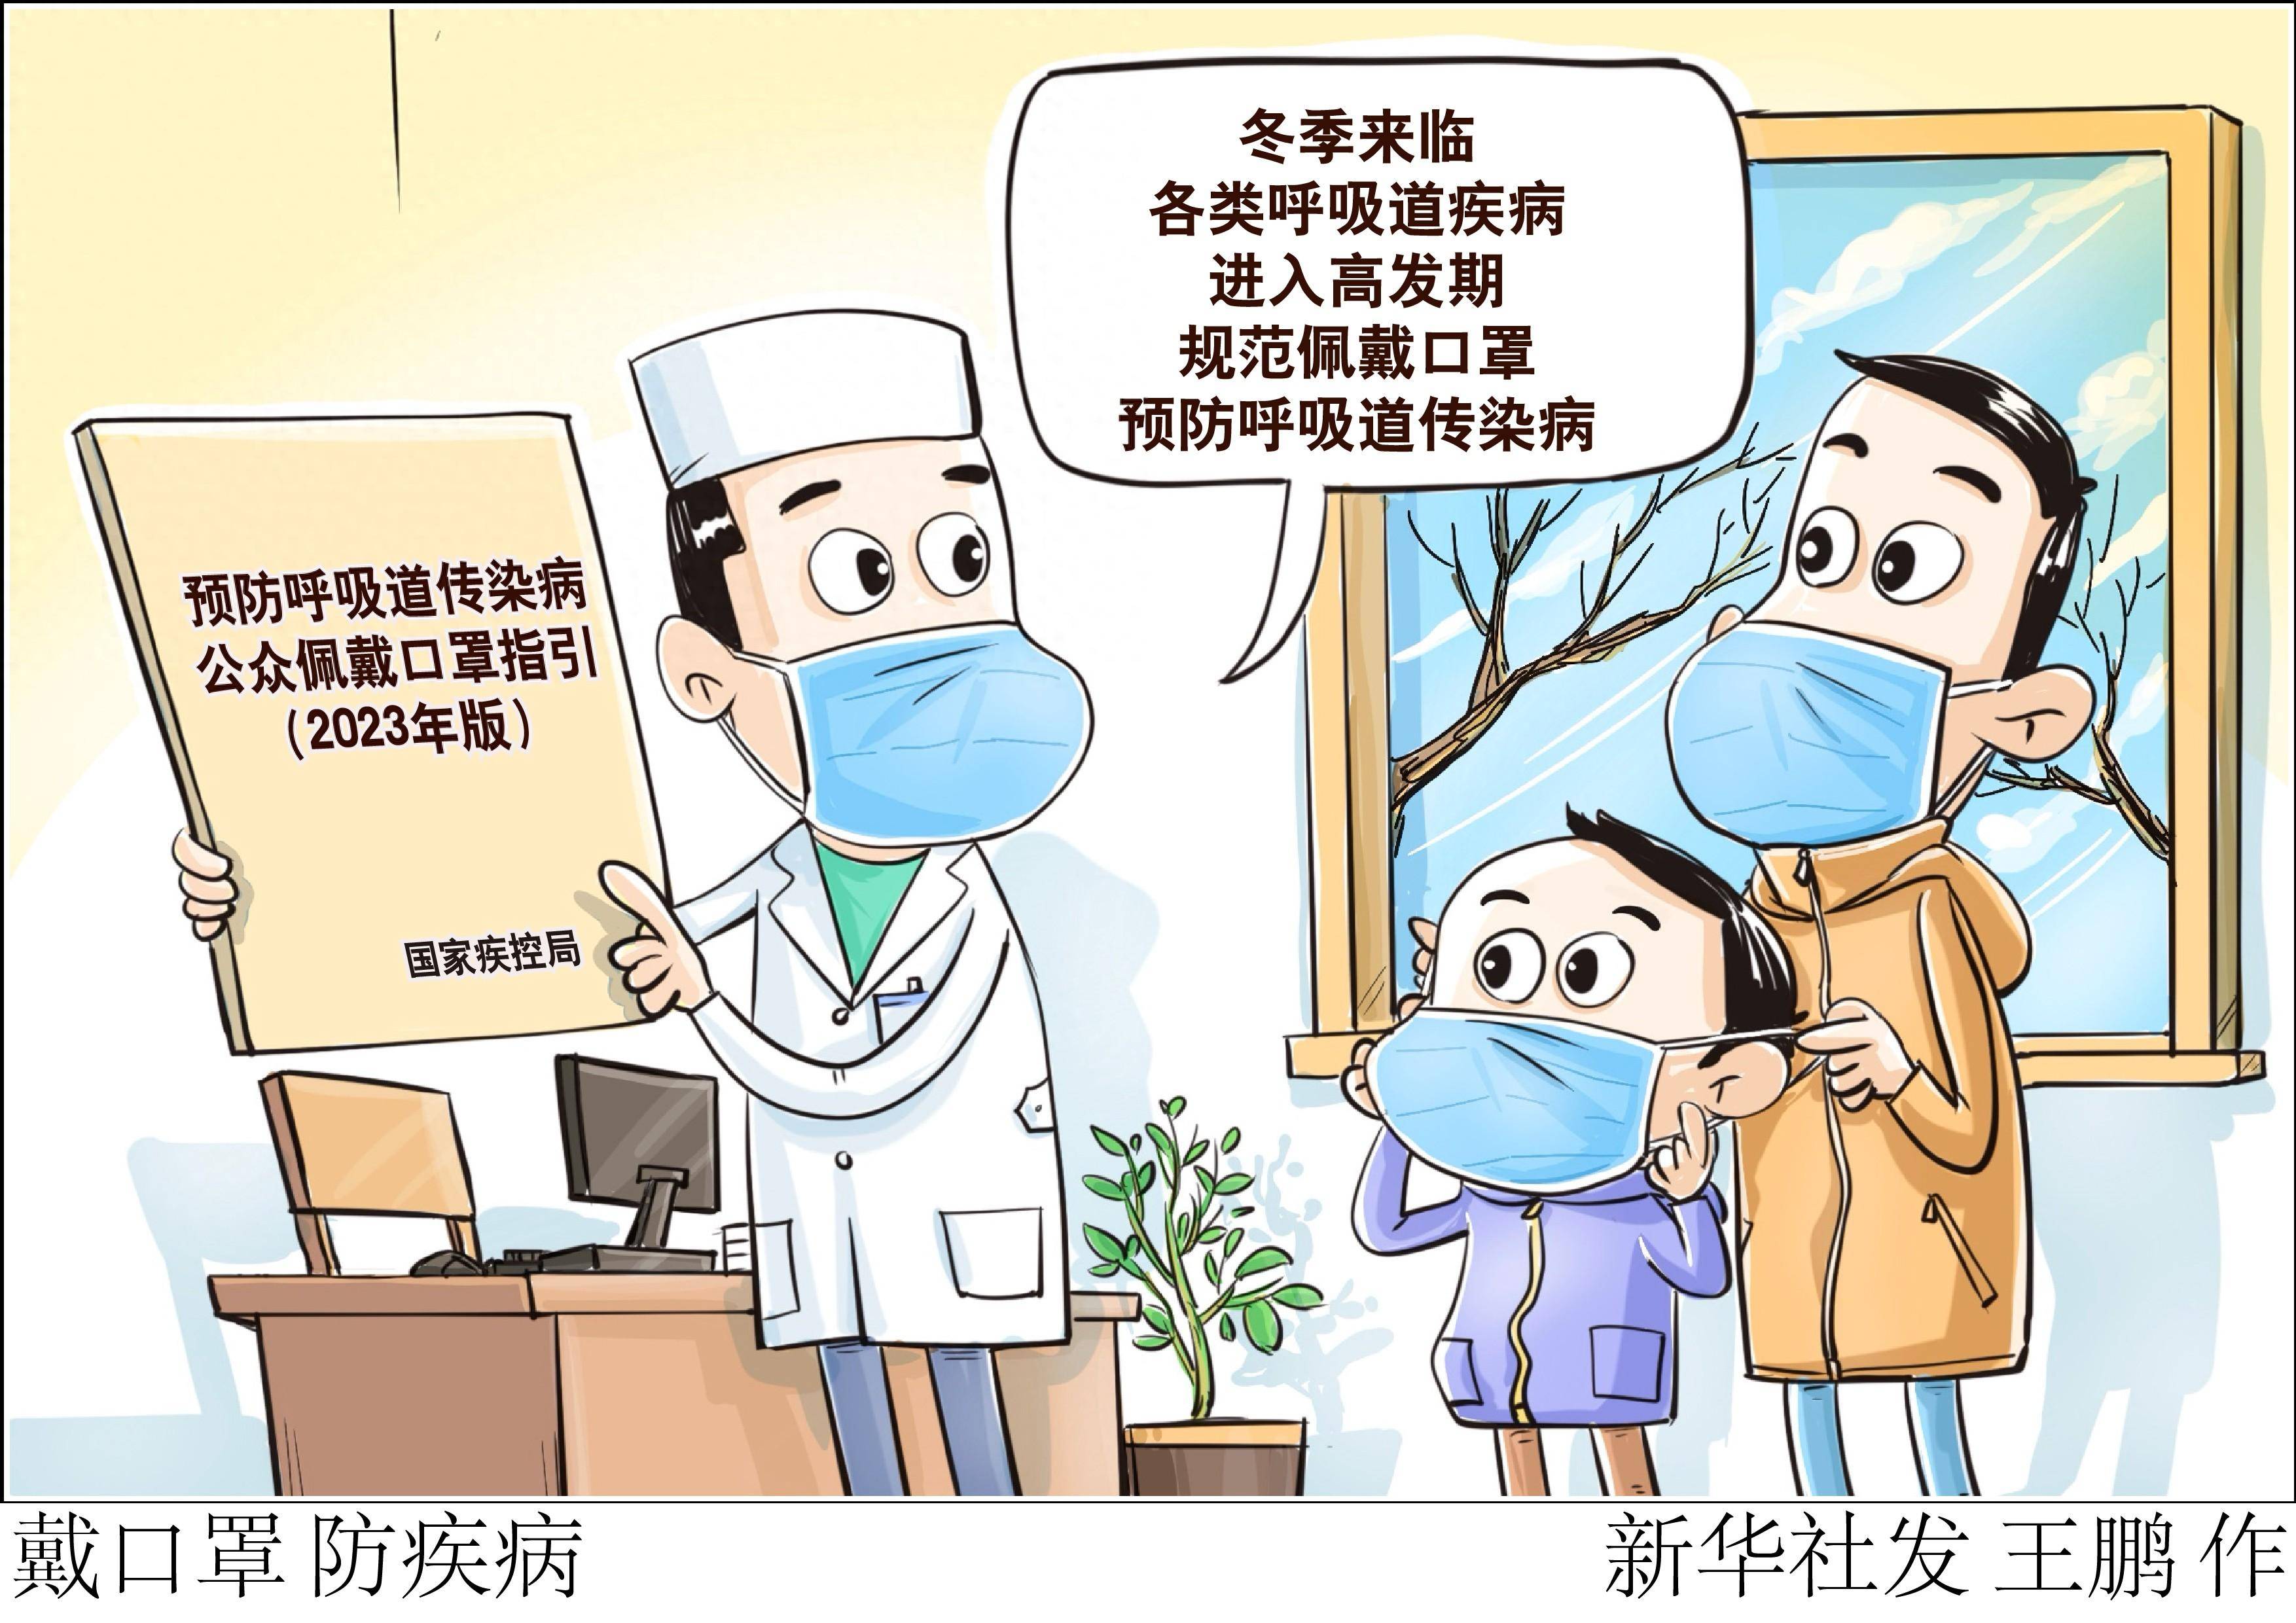 北京,2023年12月10日(漫画)戴口罩 防疾病科学佩戴口罩是呼吸道传染病